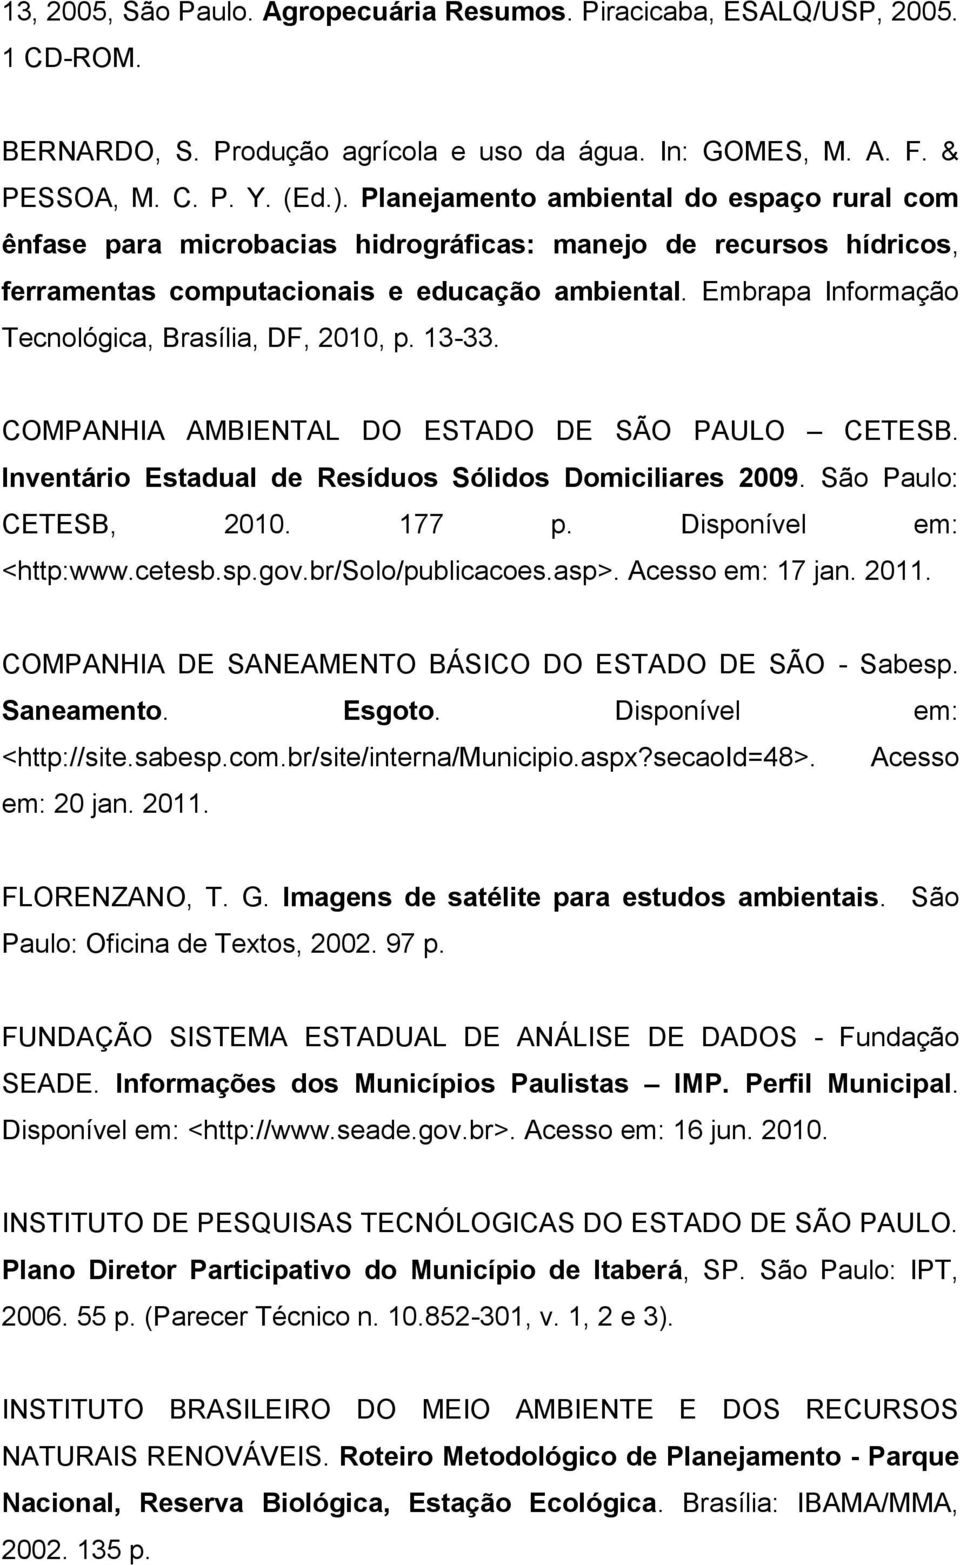 Embrapa Informação Tecnológica, Brasília, DF, 2010, p. 13-33. COMPANHIA AMBIENTAL DO ESTADO DE SÃO PAULO CETESB. Inventário Estadual de Resíduos Sólidos Domiciliares 2009. São Paulo: CETESB, 2010.